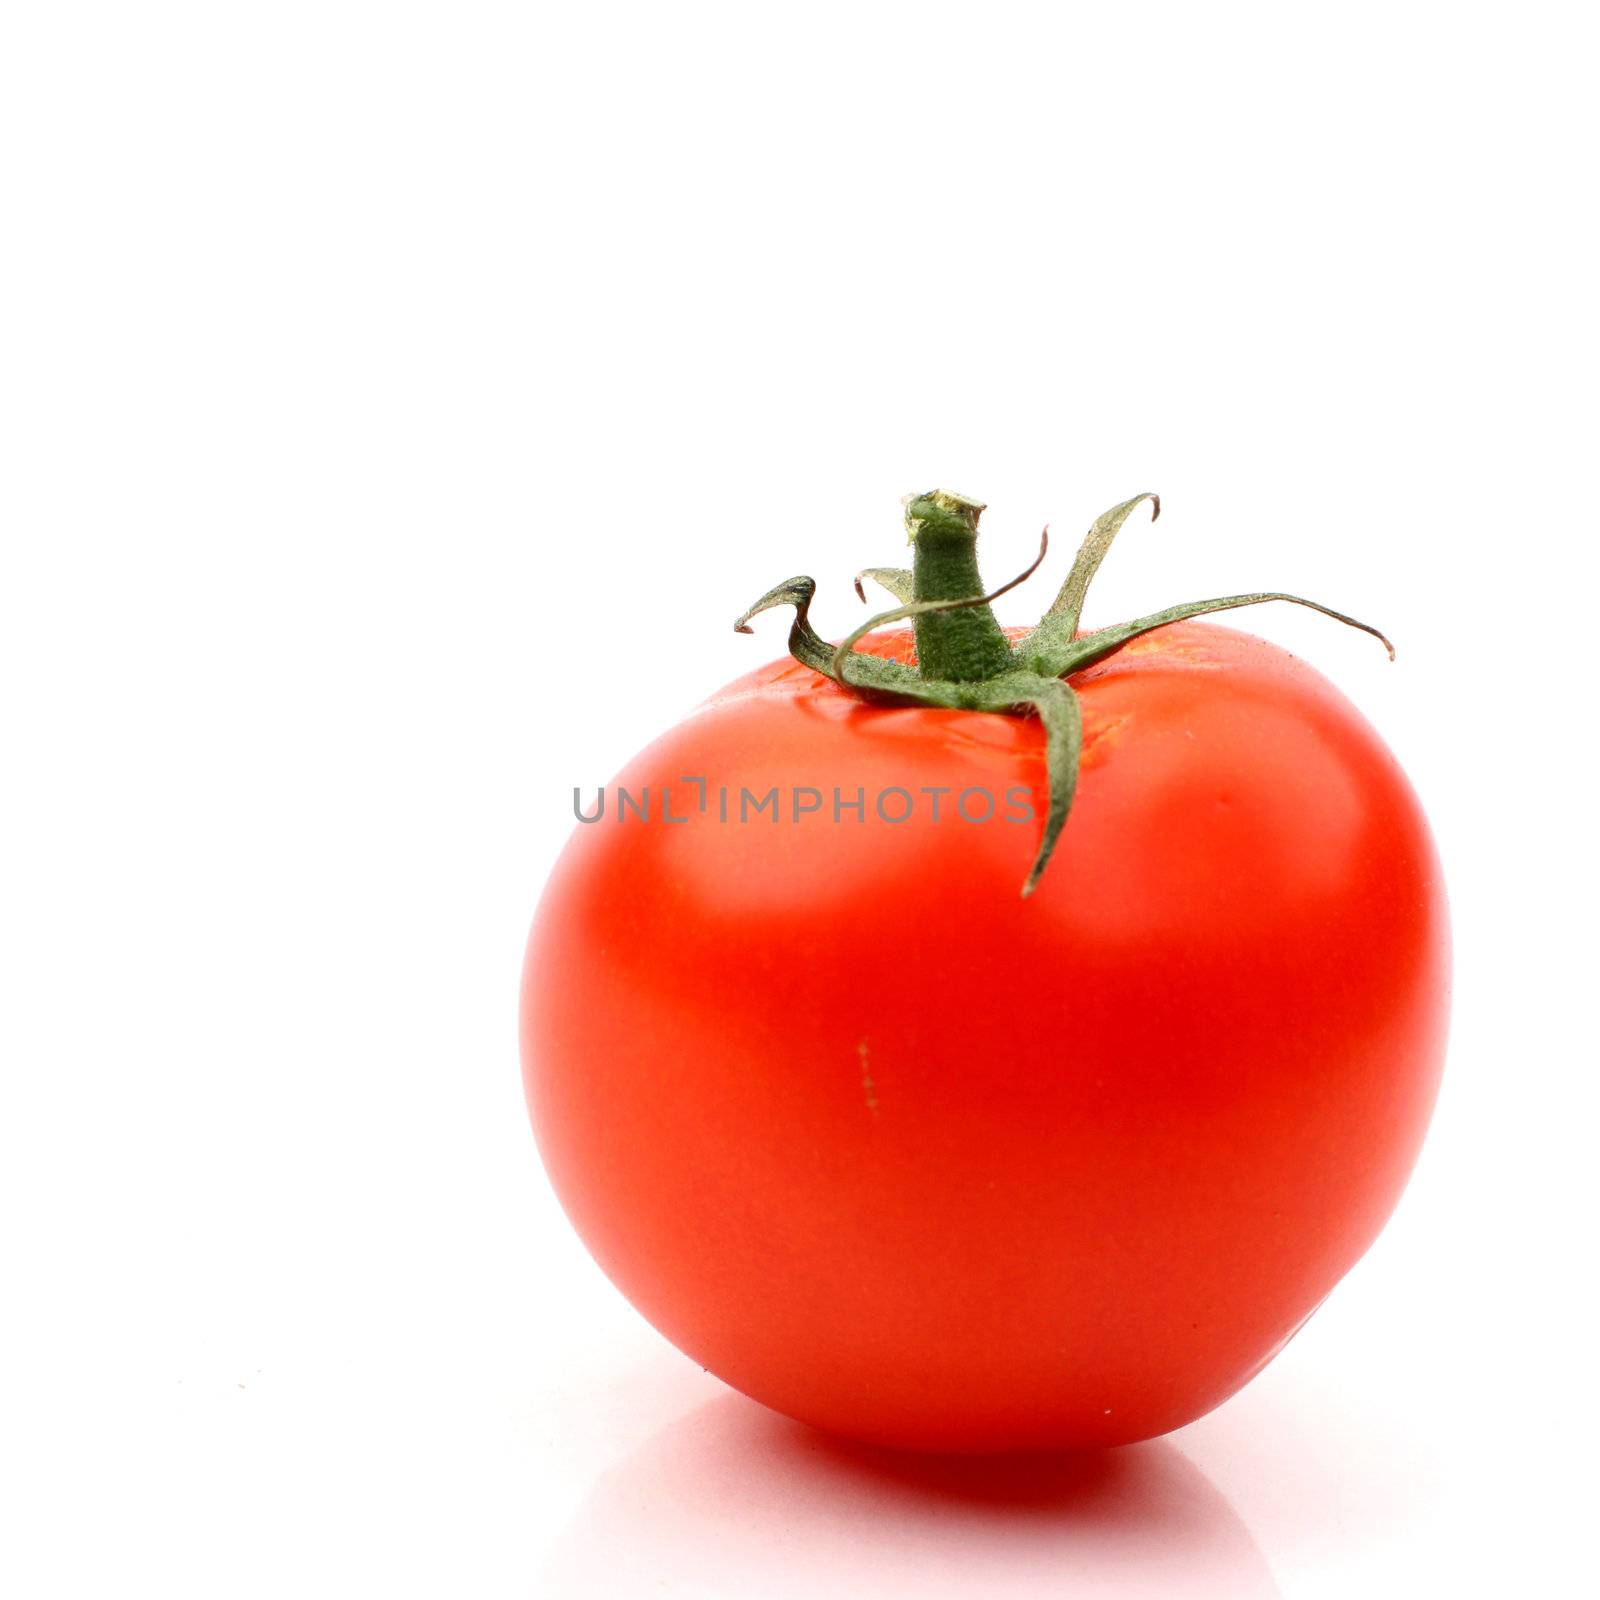 one tomato isolated on white background